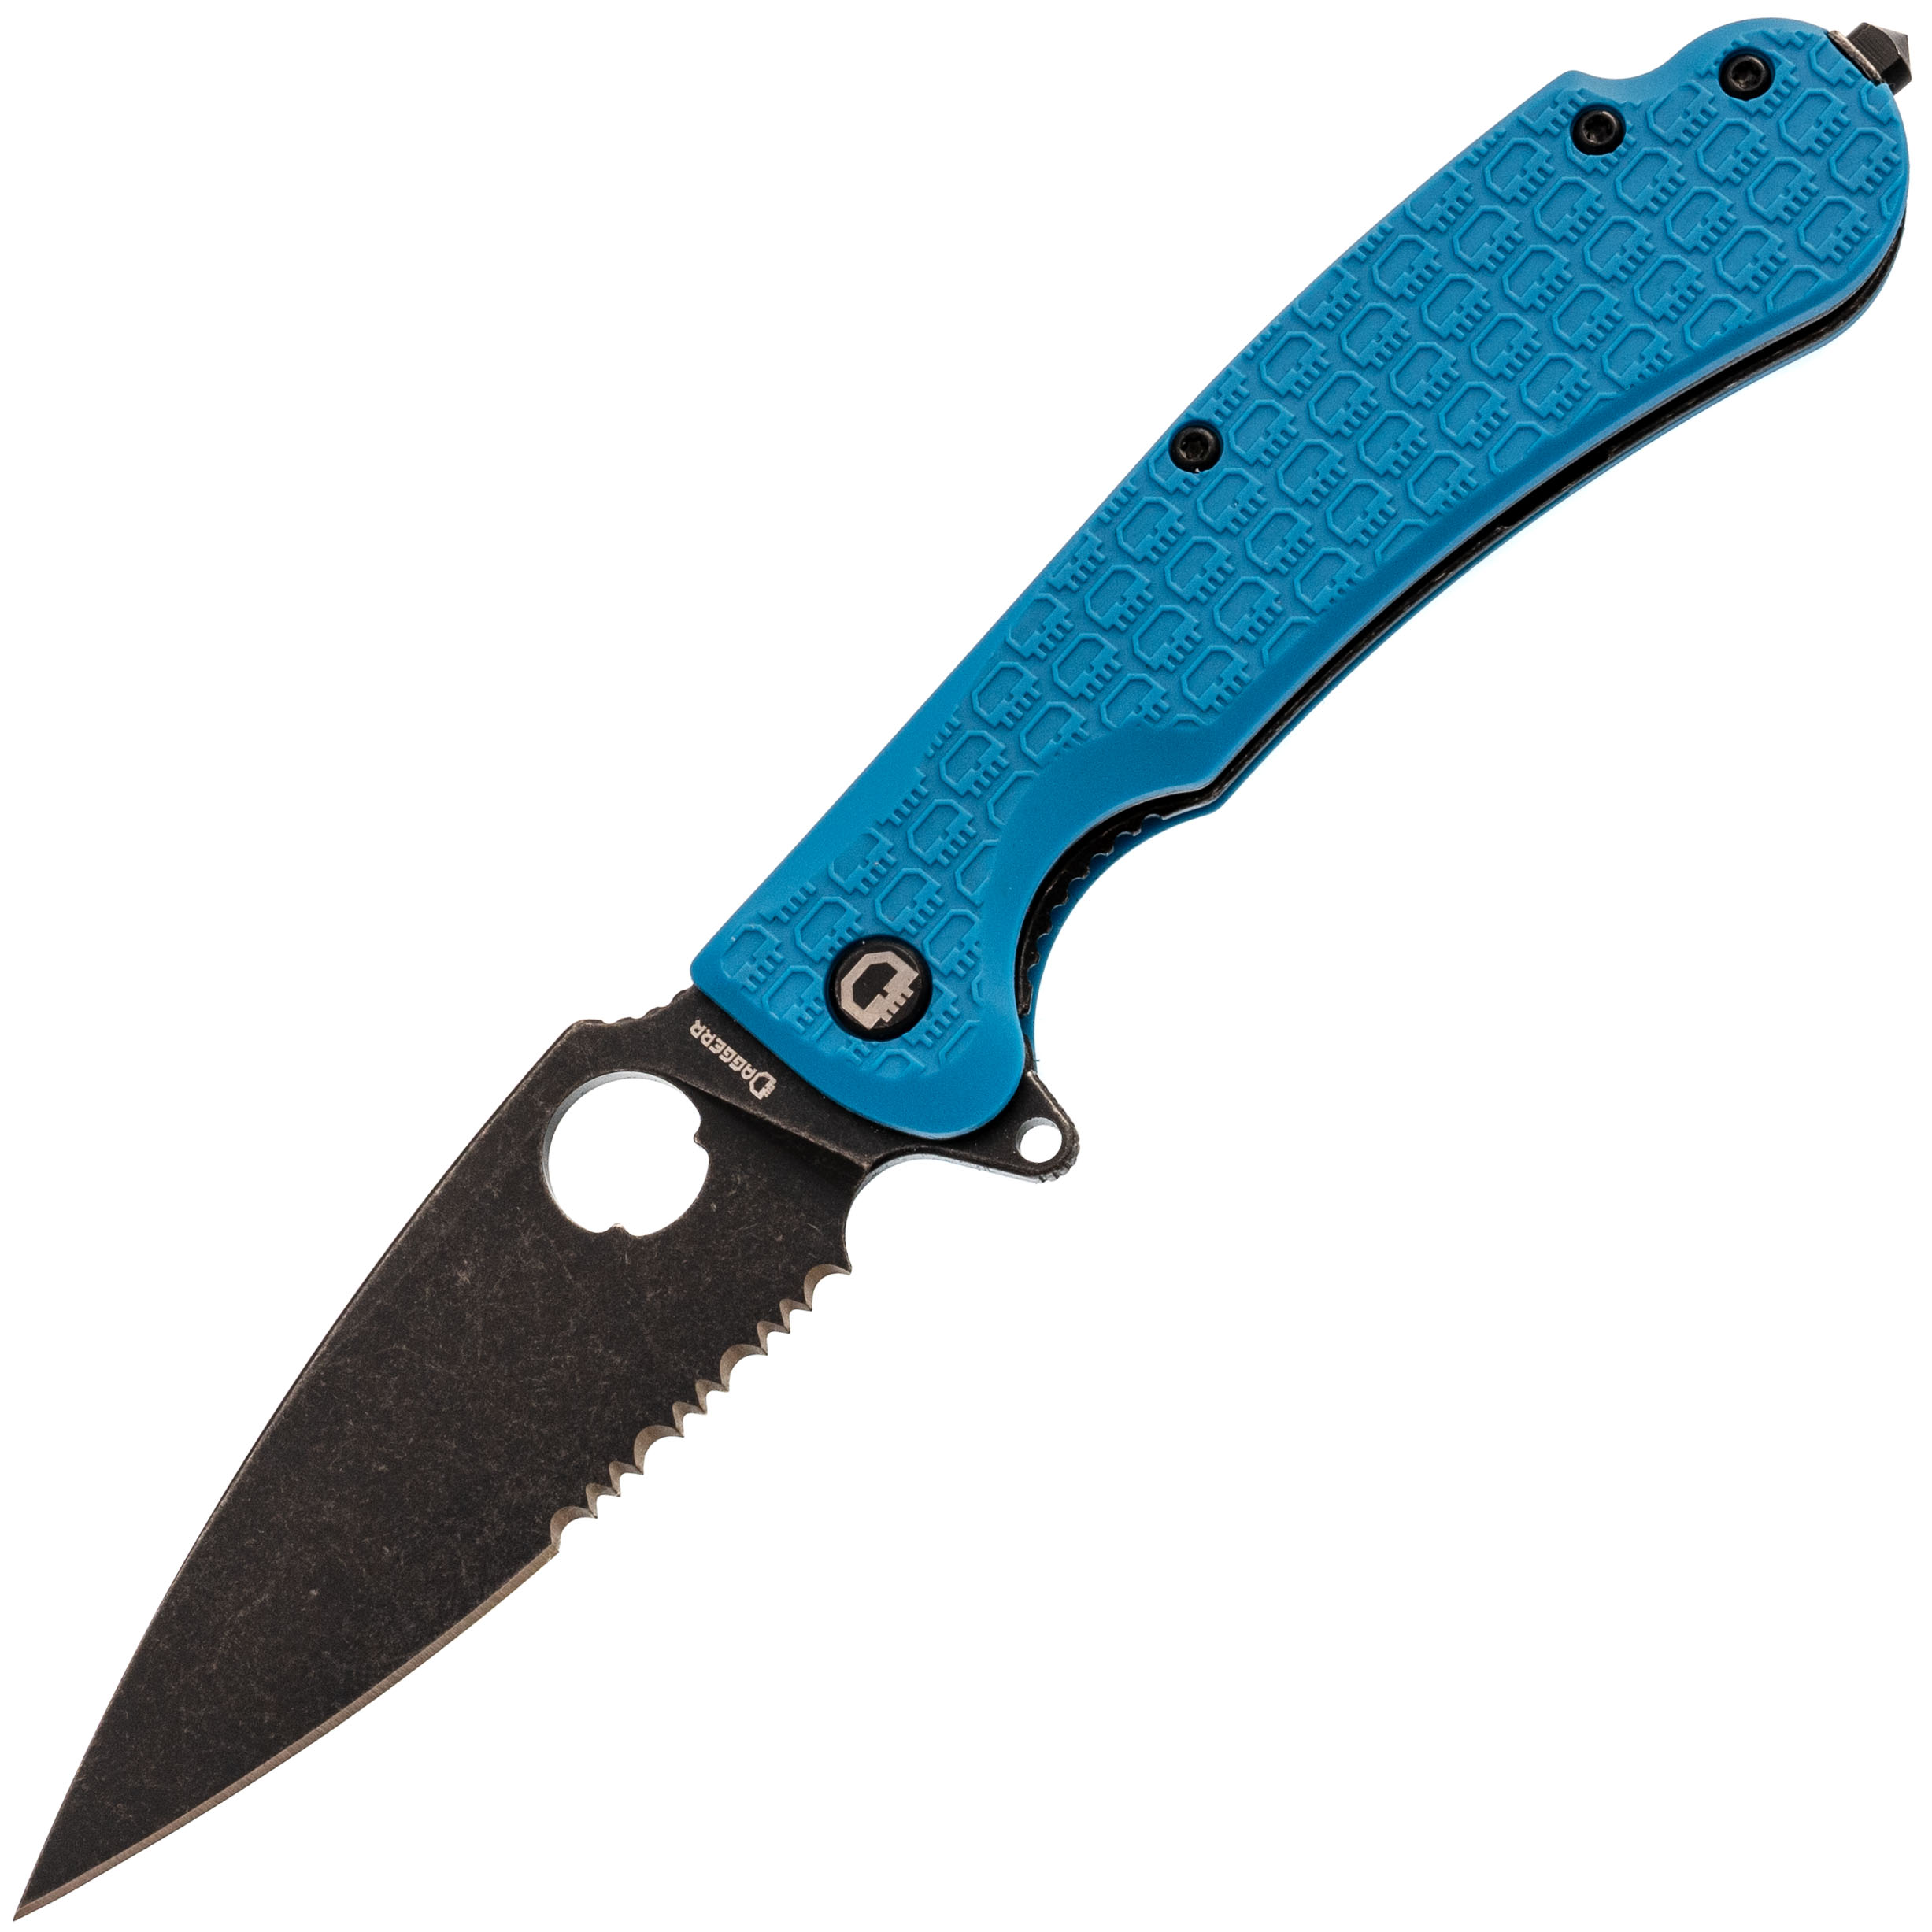 Складной нож Daggerr Resident Blue BW Serrated, сталь 8Cr14MoV, рукоять FRN